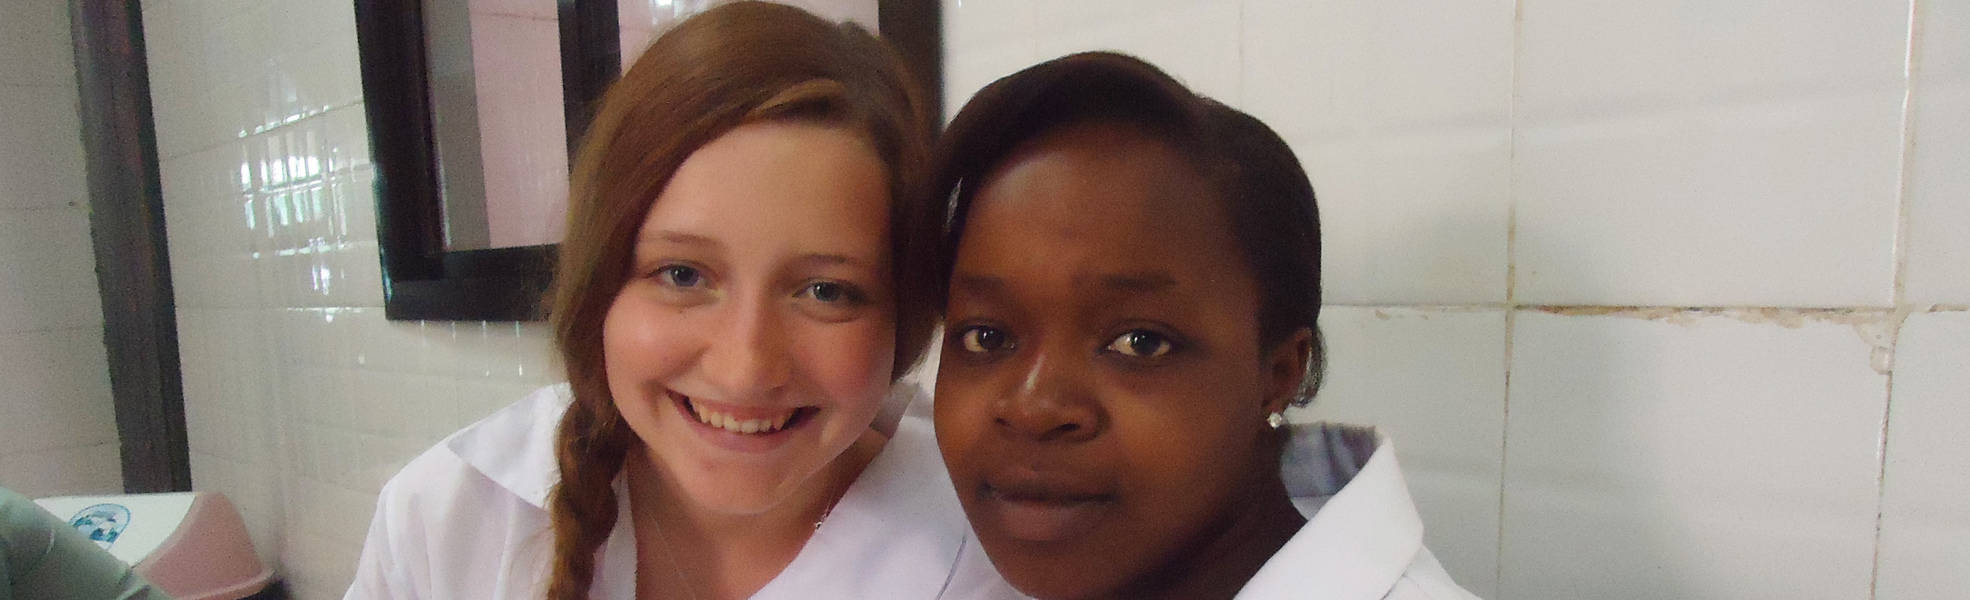 Medizinische Freiwilligenarbeit in Tansania